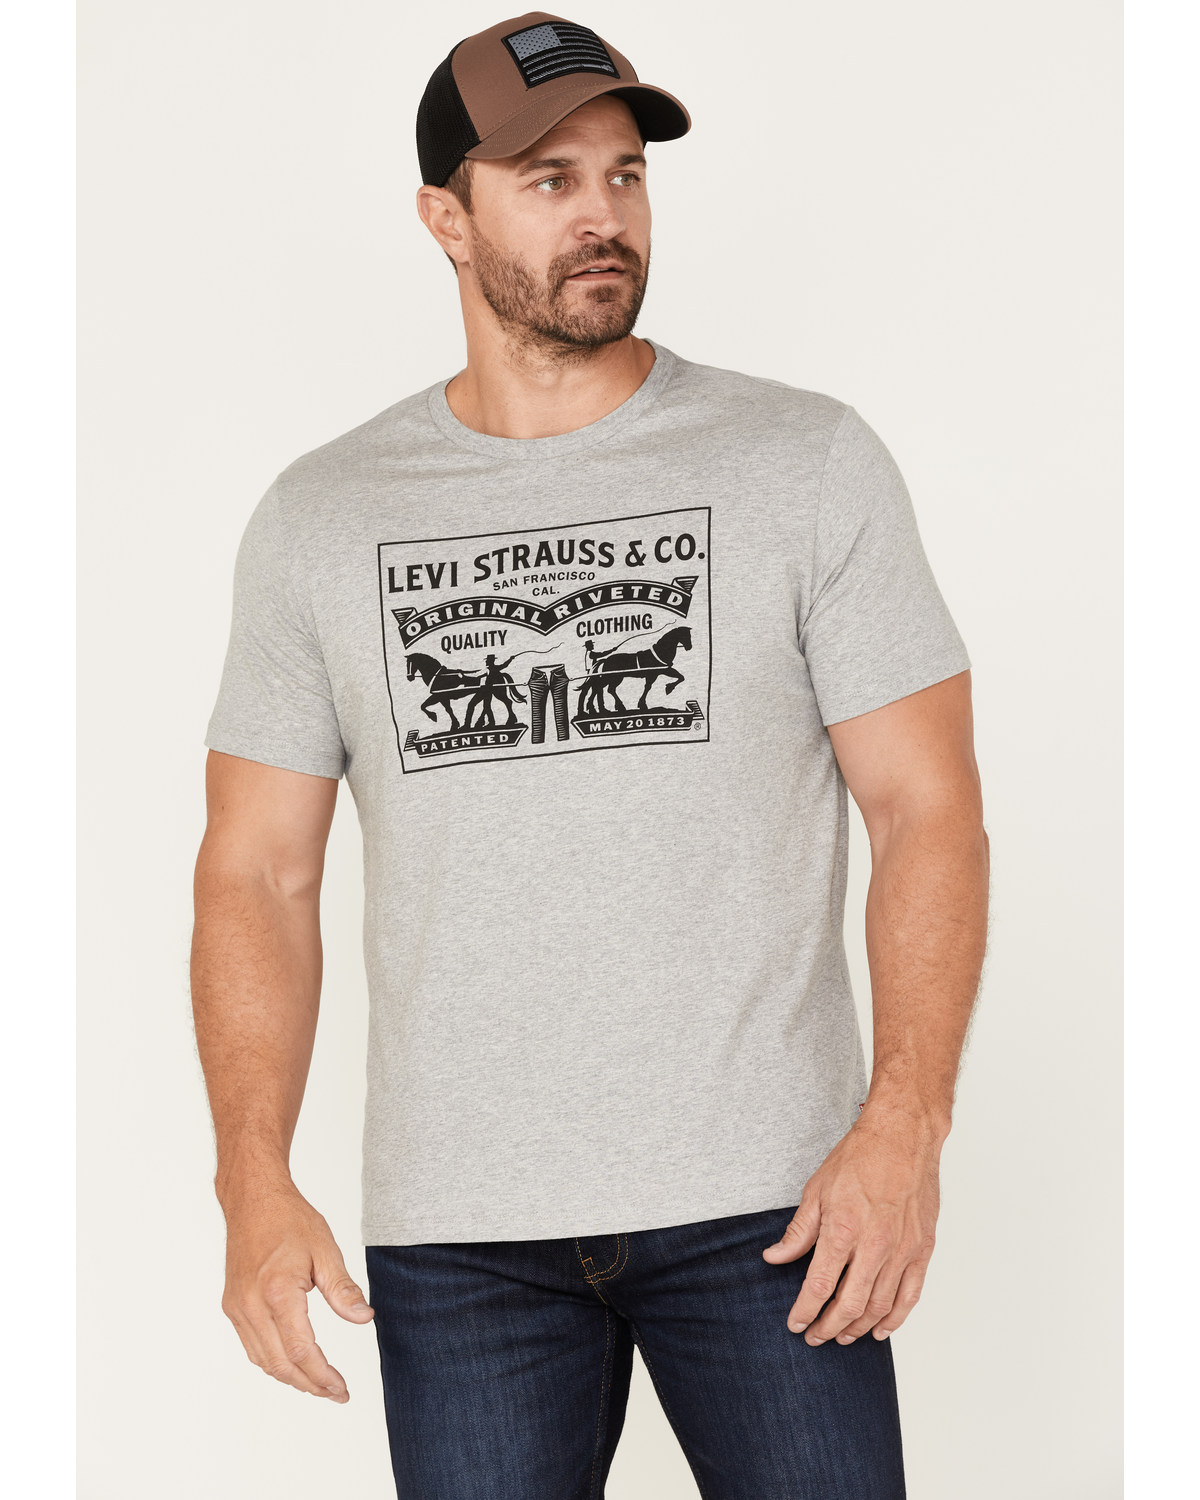 Levi's Men's 2-Horse Logo Graphic T-Shirt